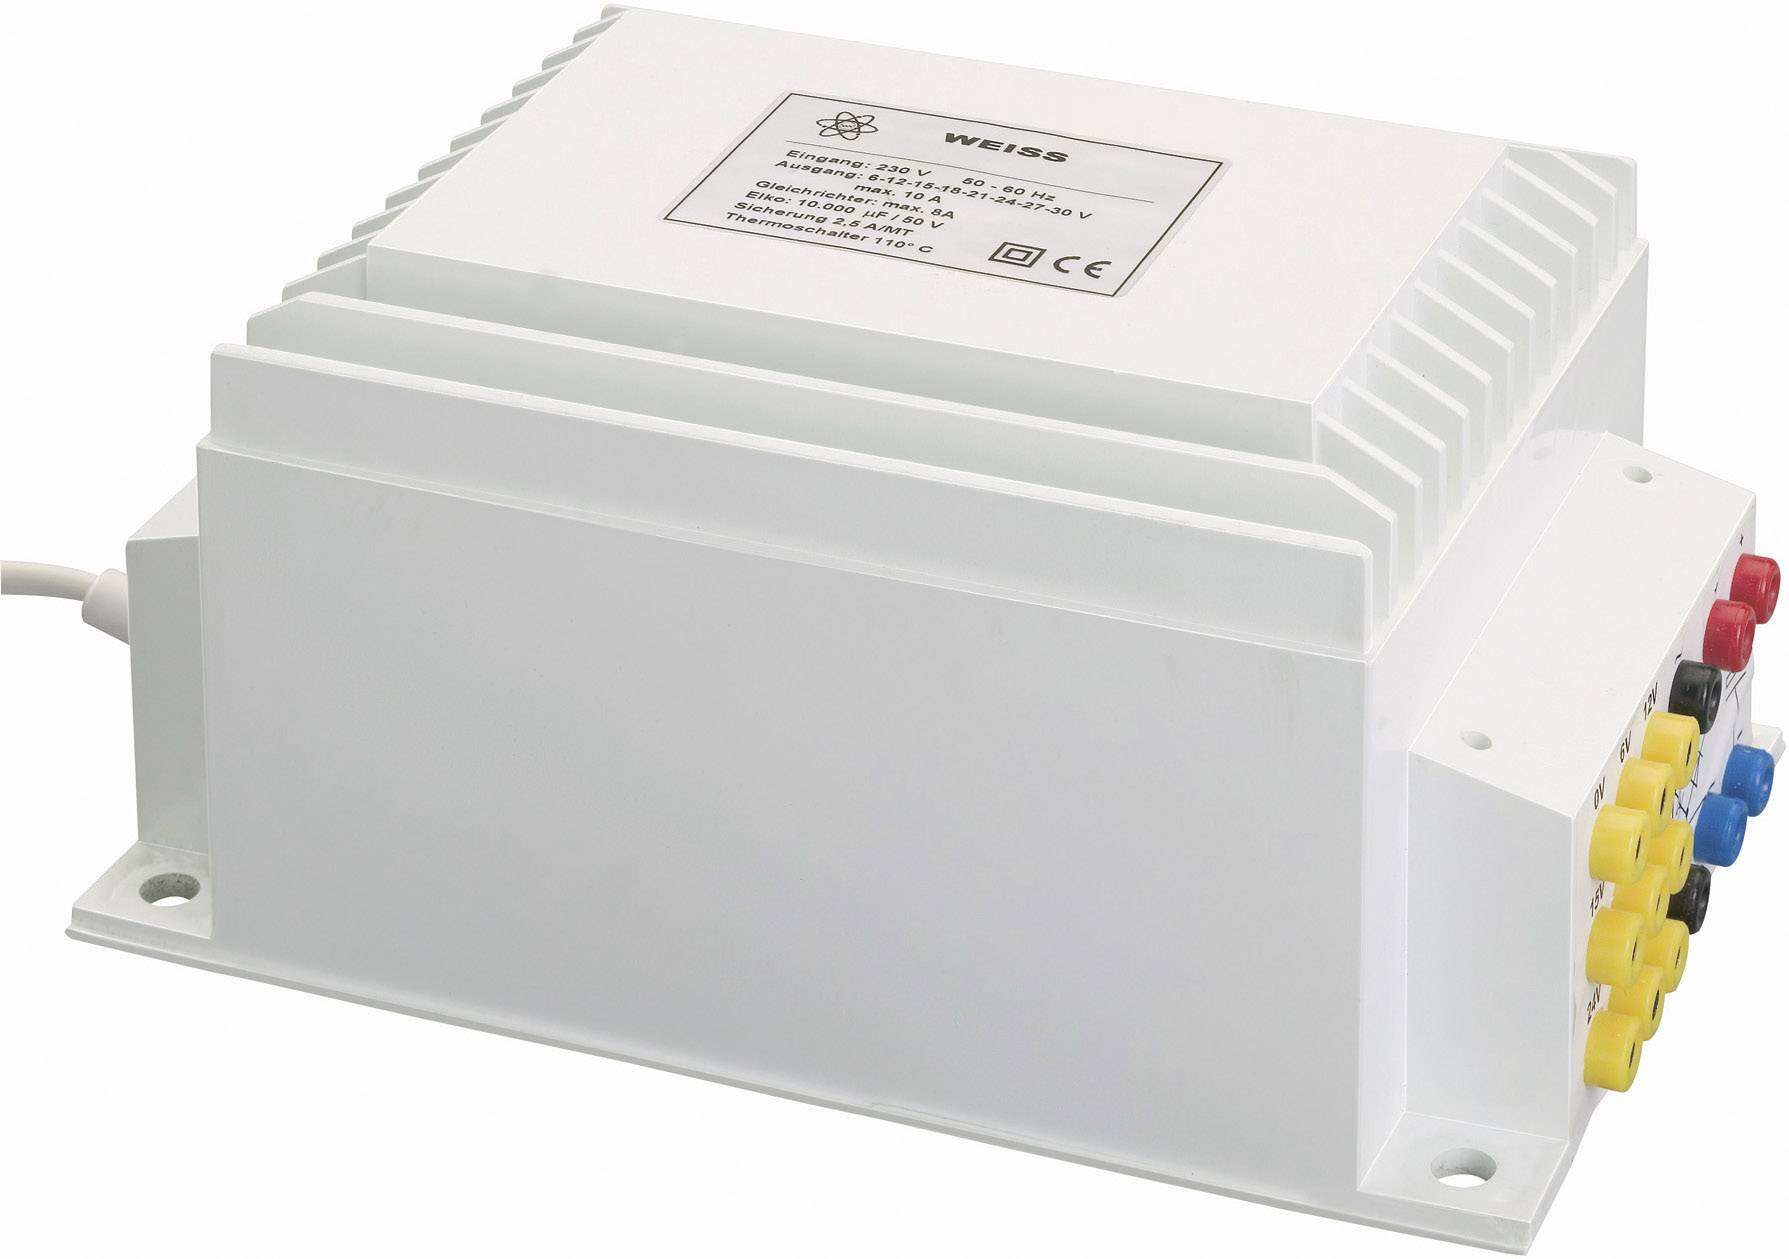 WEISS ELEKTROTECHNIK NGE100 Kompaktnetzteil Transformator 1 x 230 V 1 x 0 V, 6 V/AC, 15 V/AC